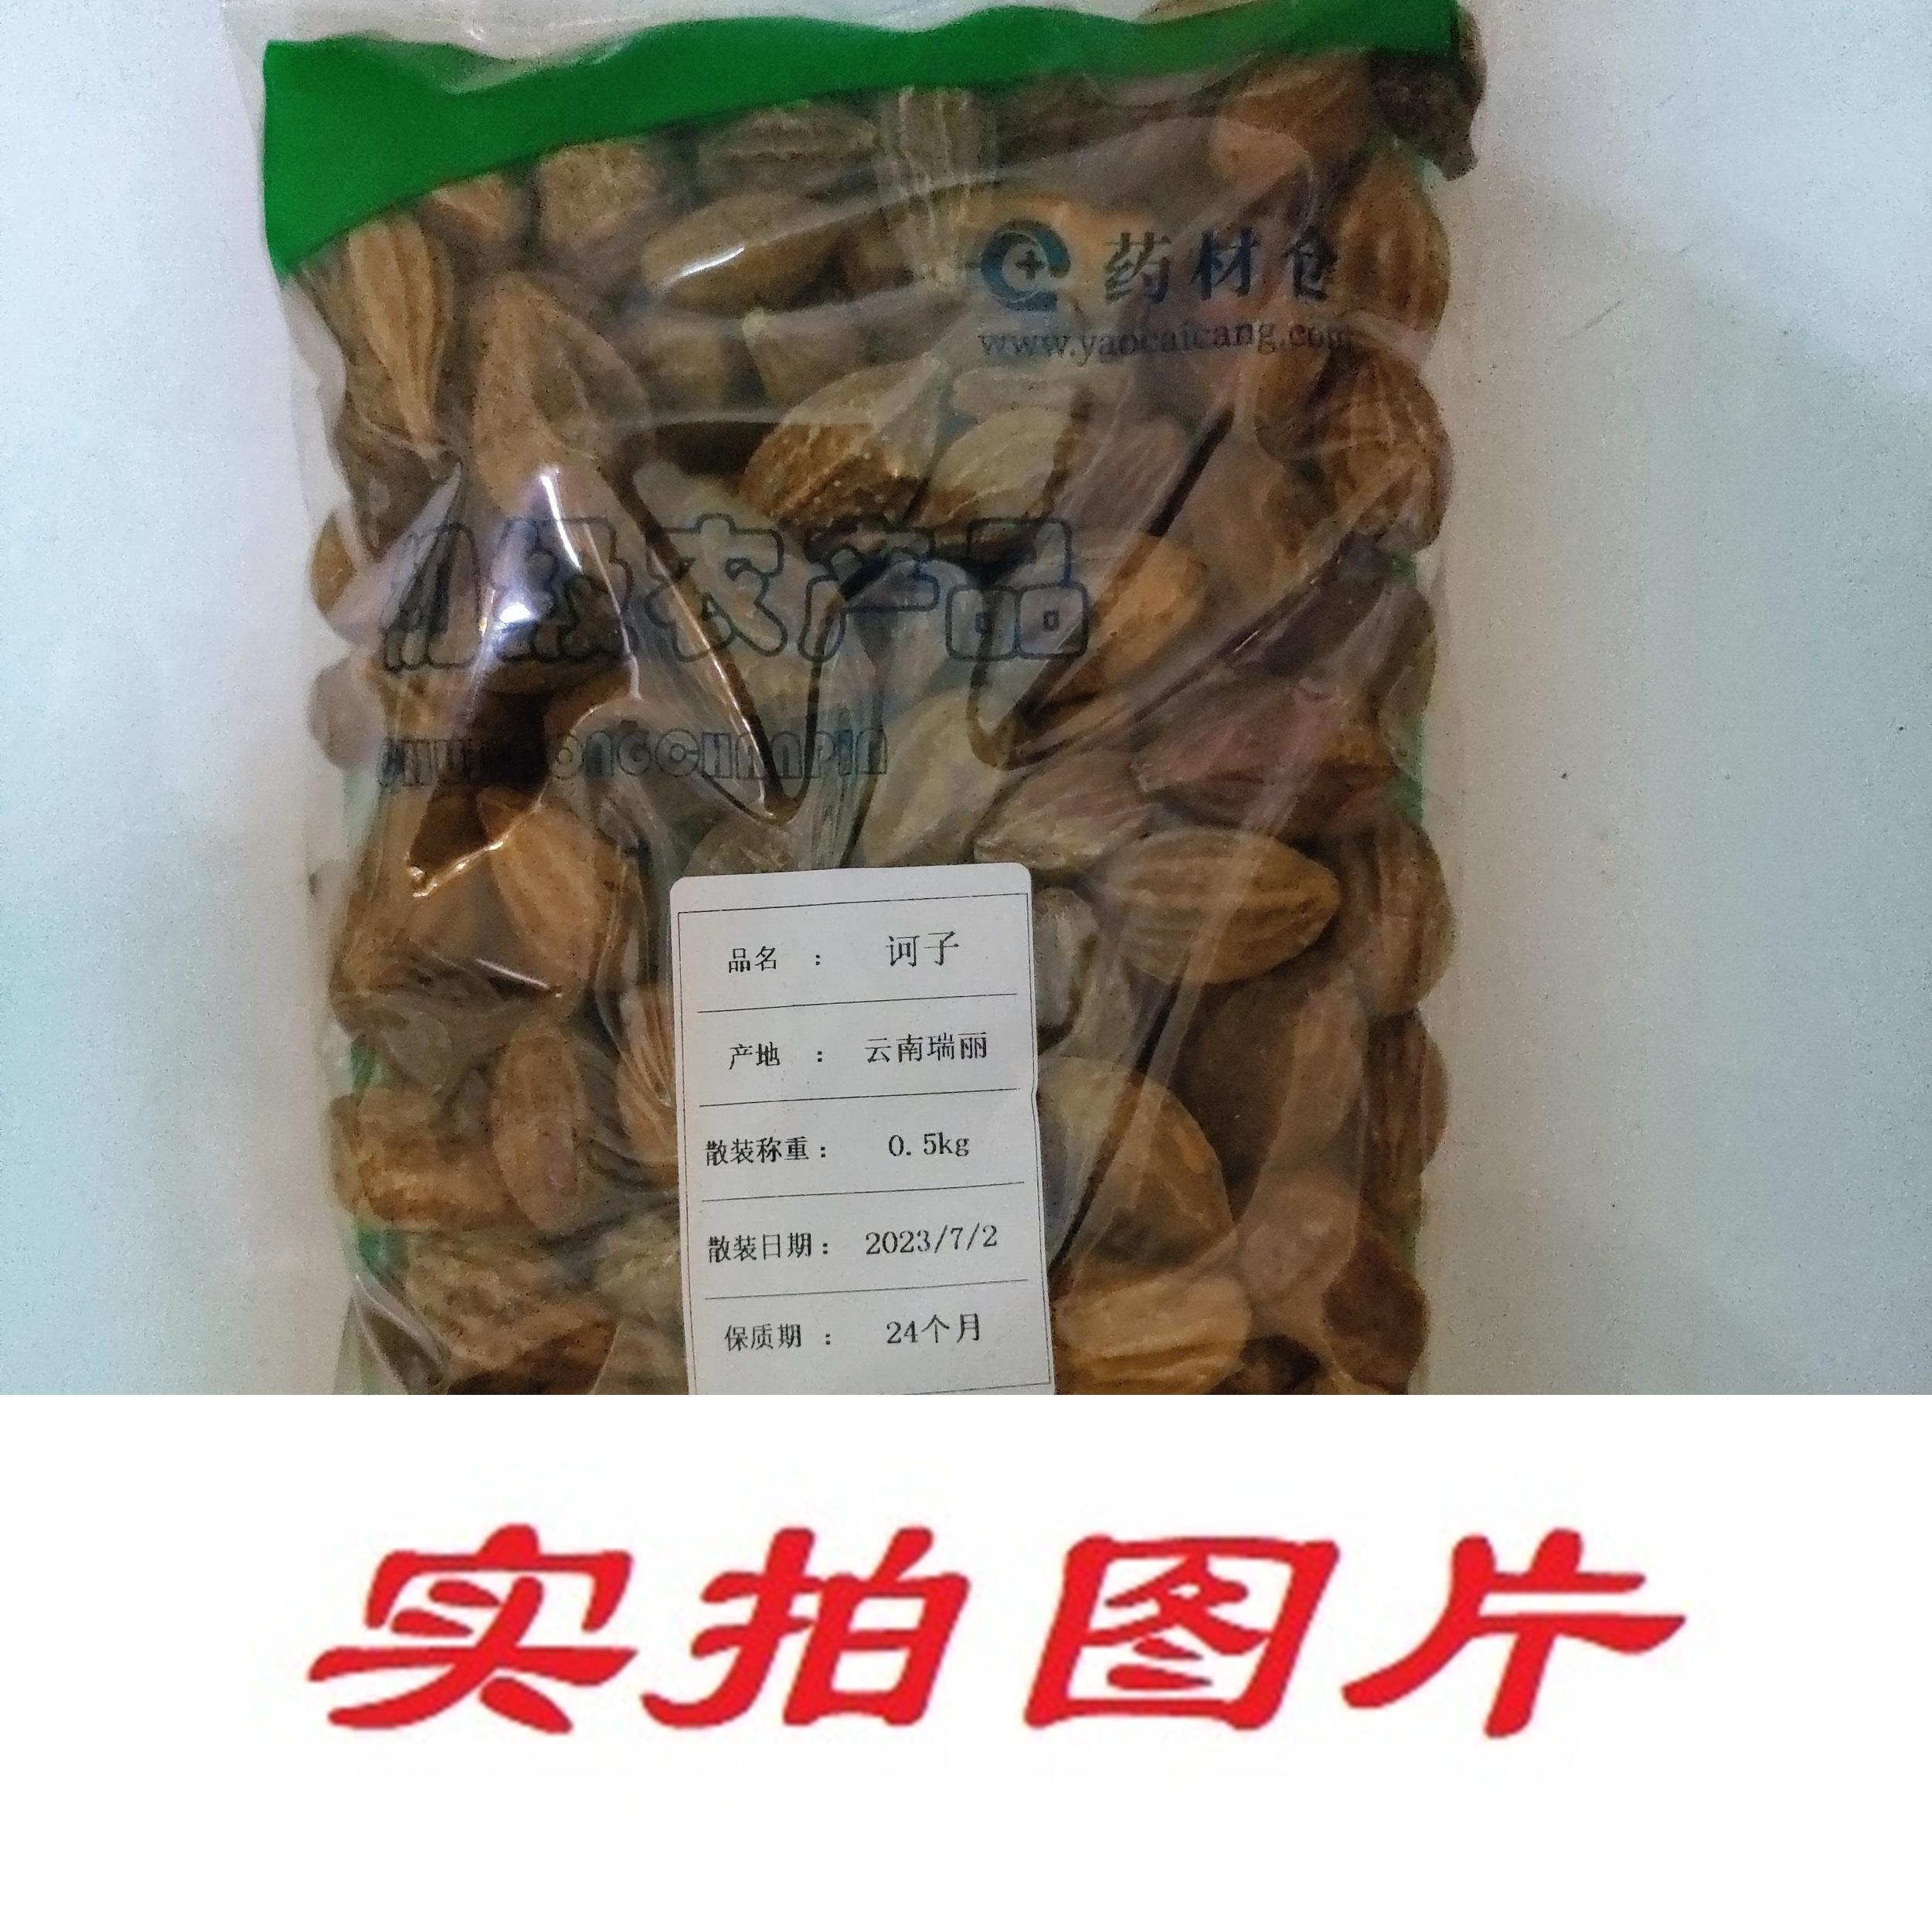 【】诃子0.5kg-农副产品